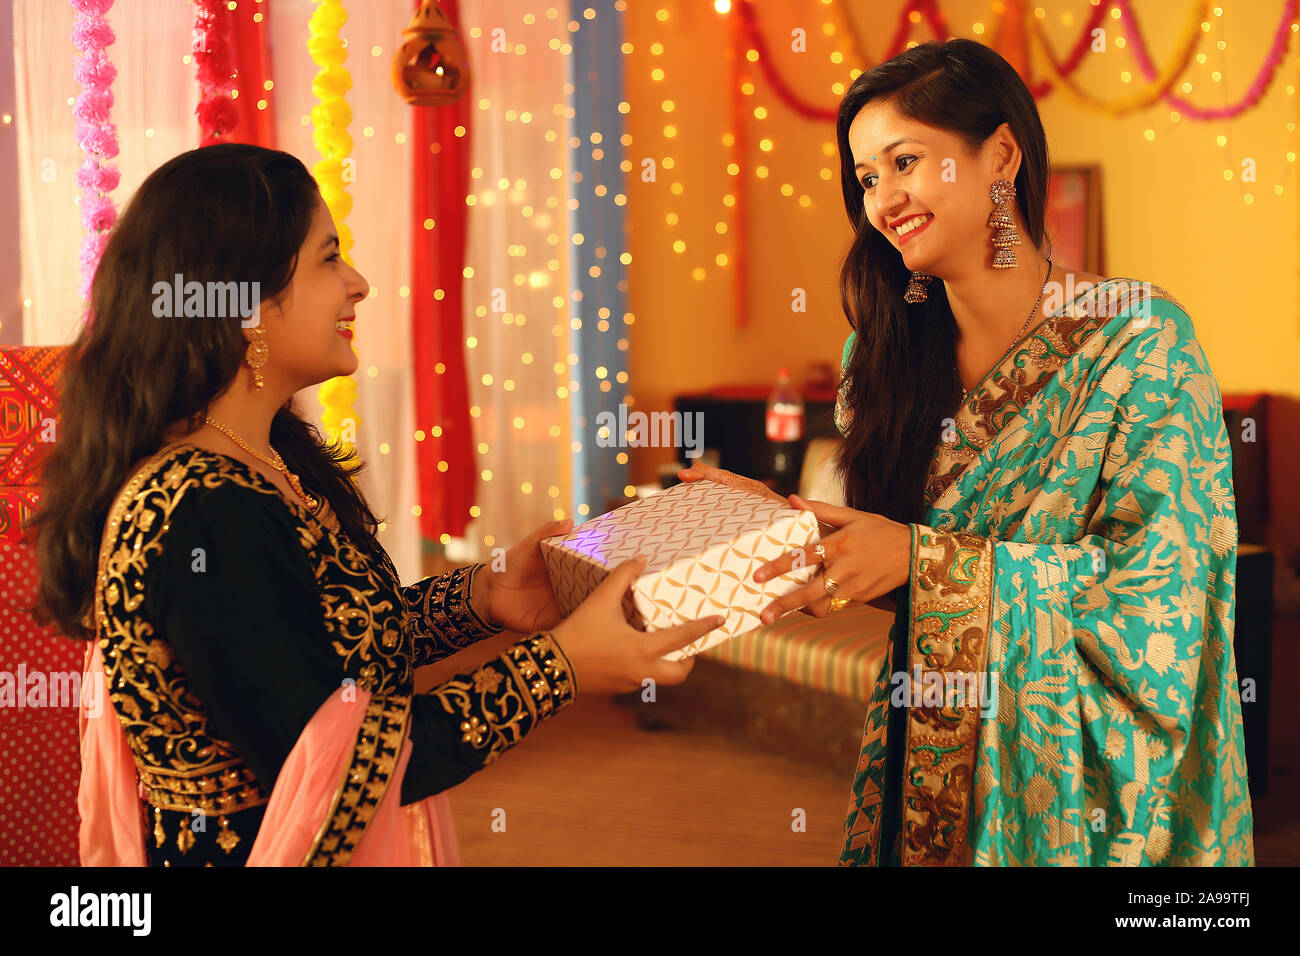 Jolie jeune femme indienne portant des vêtements ethniques traditionnels donner un cadeau à une femme, plus de flou d'arrière-plan de fête. Banque D'Images